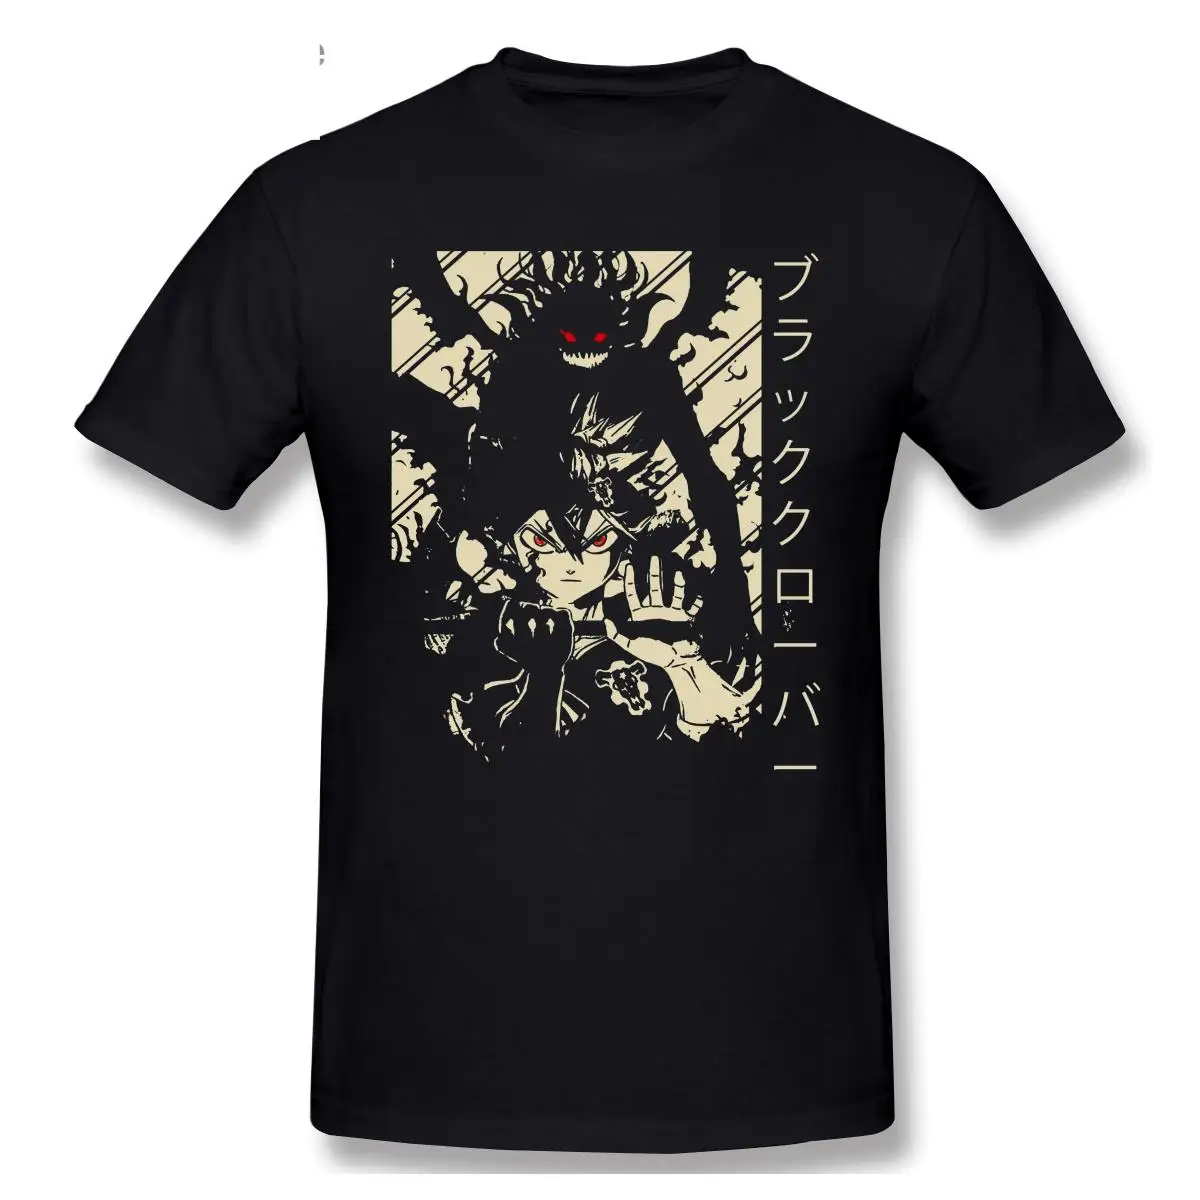 

2021 модная футболка с графическим рисунком из мультфильма аниме черный клевер Аста Повседневная мужская футболка с коротким рукавом и кругл...